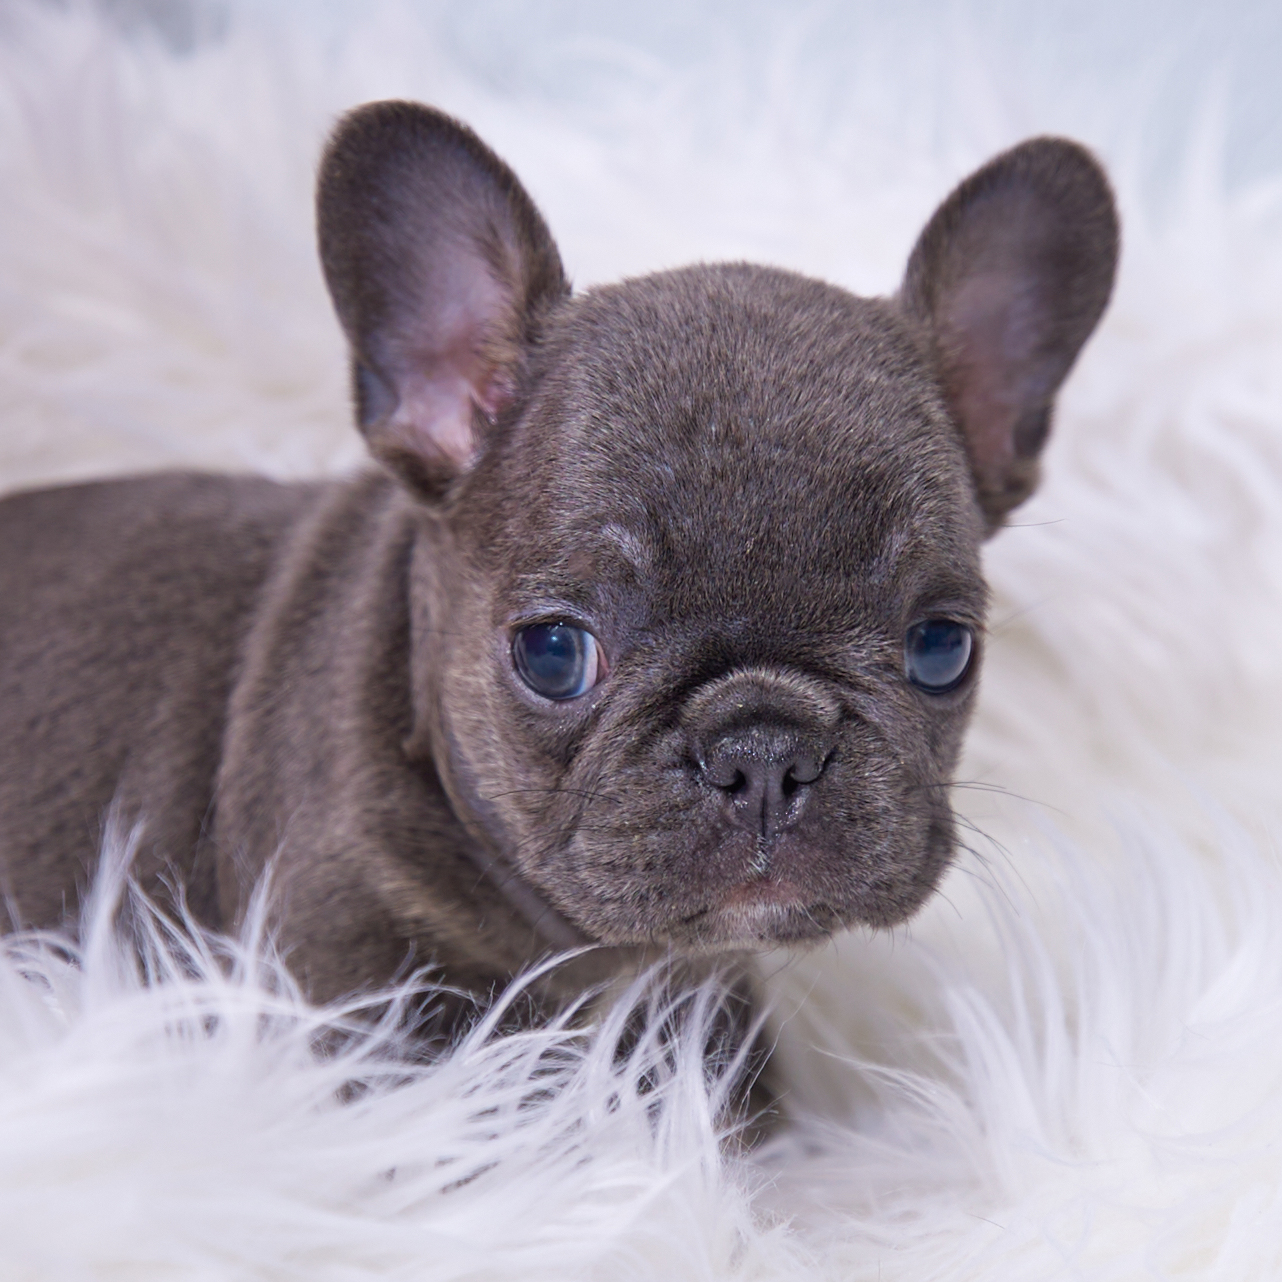 Fabi – Blue Fluffy French Bulldog